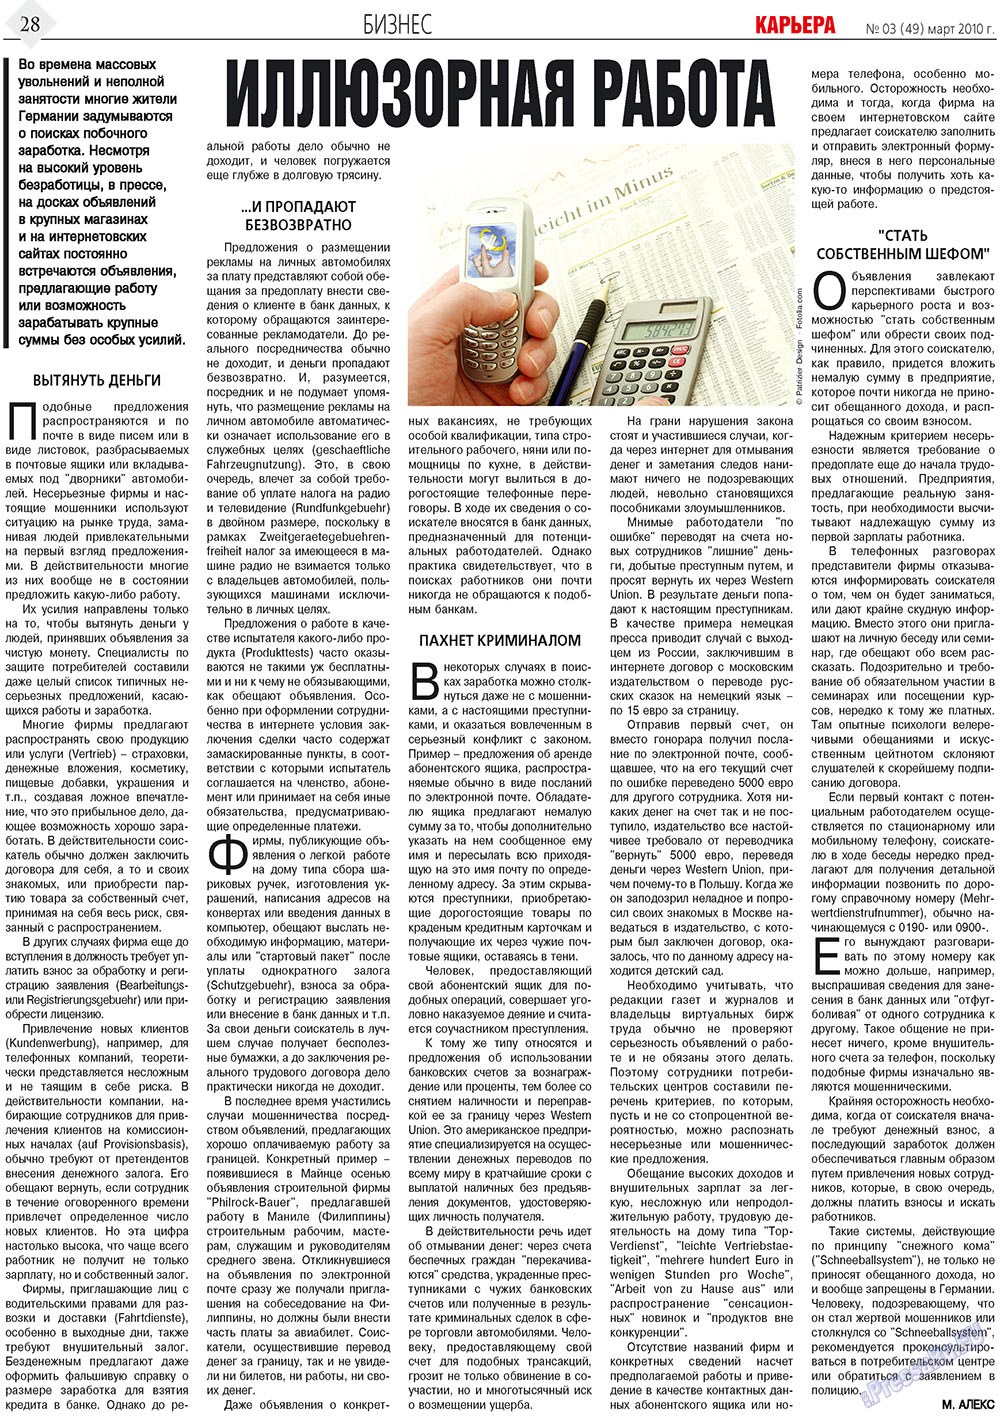 Карьера, газета. 2010 №3 стр.28